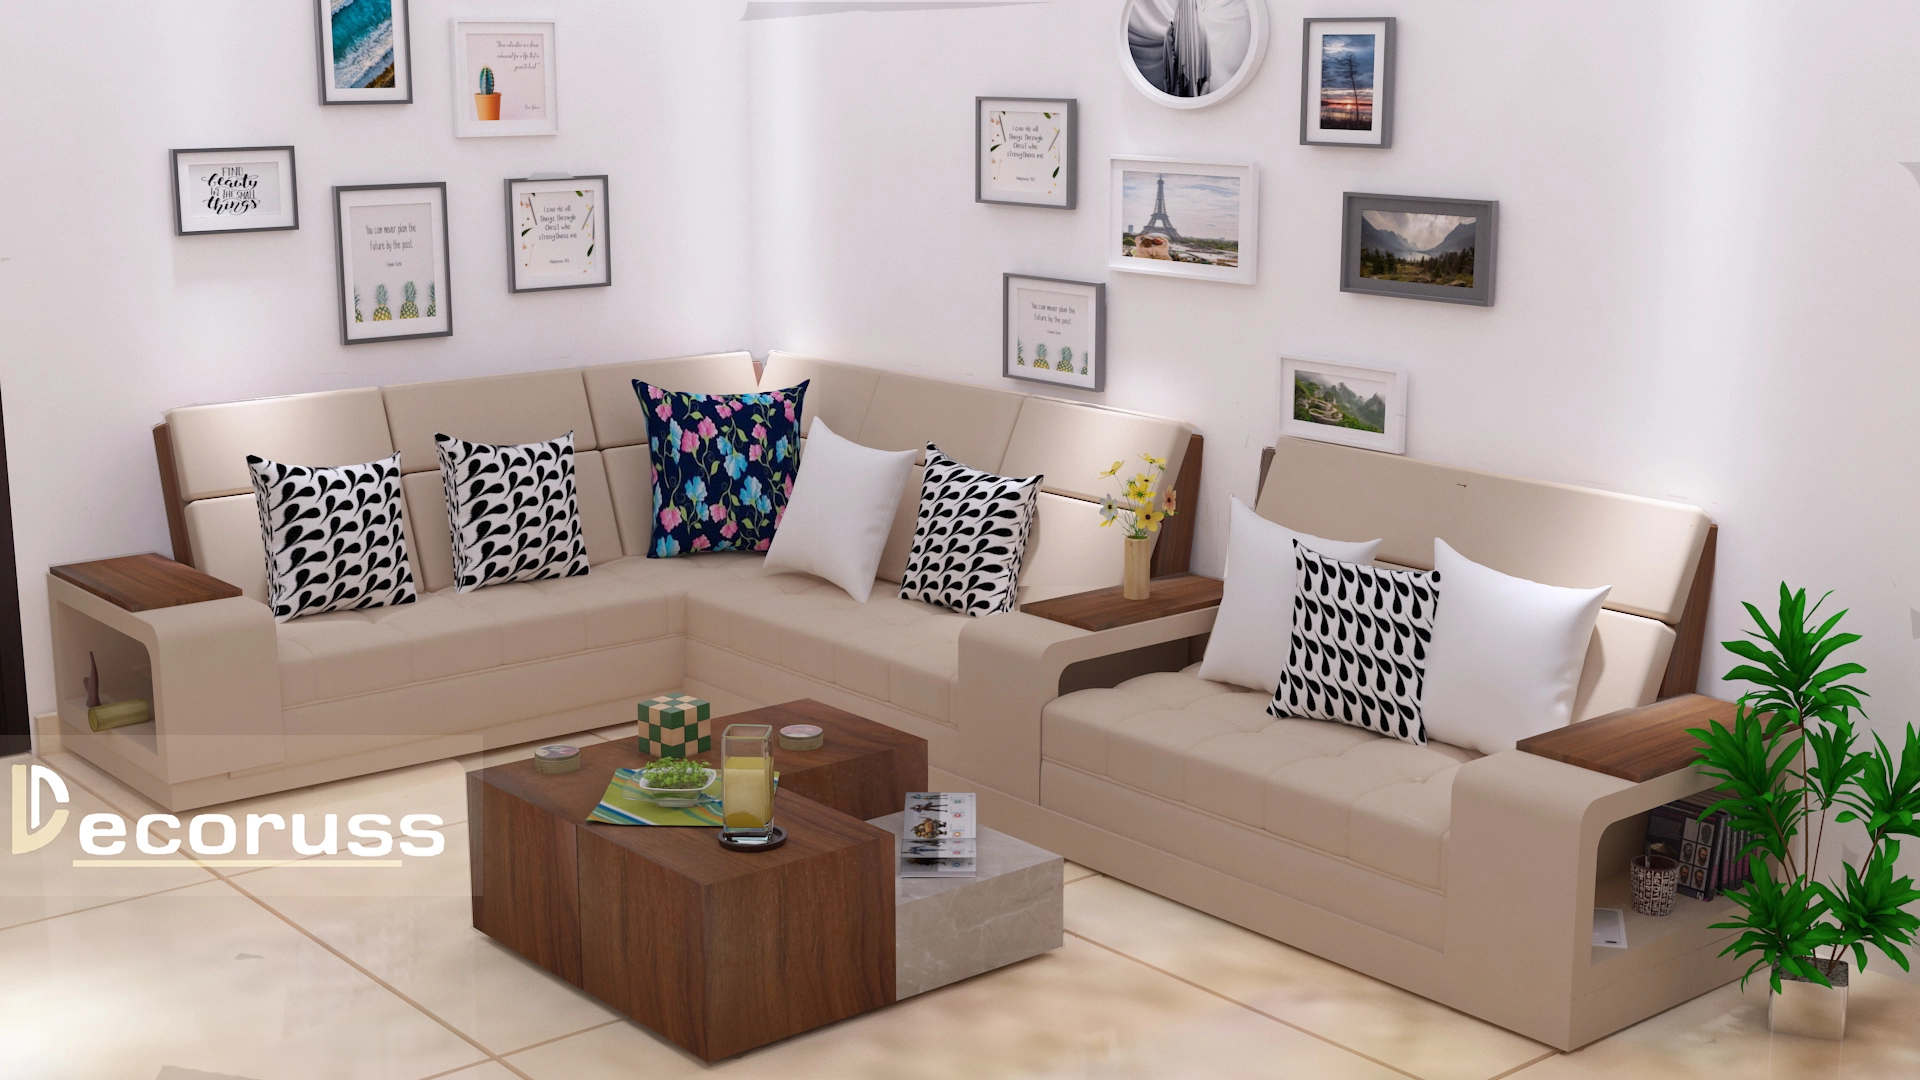 Living room sofa design for Khuram nagar interior design project by Decoruss interior designer in Khurram Nagar Lucknow